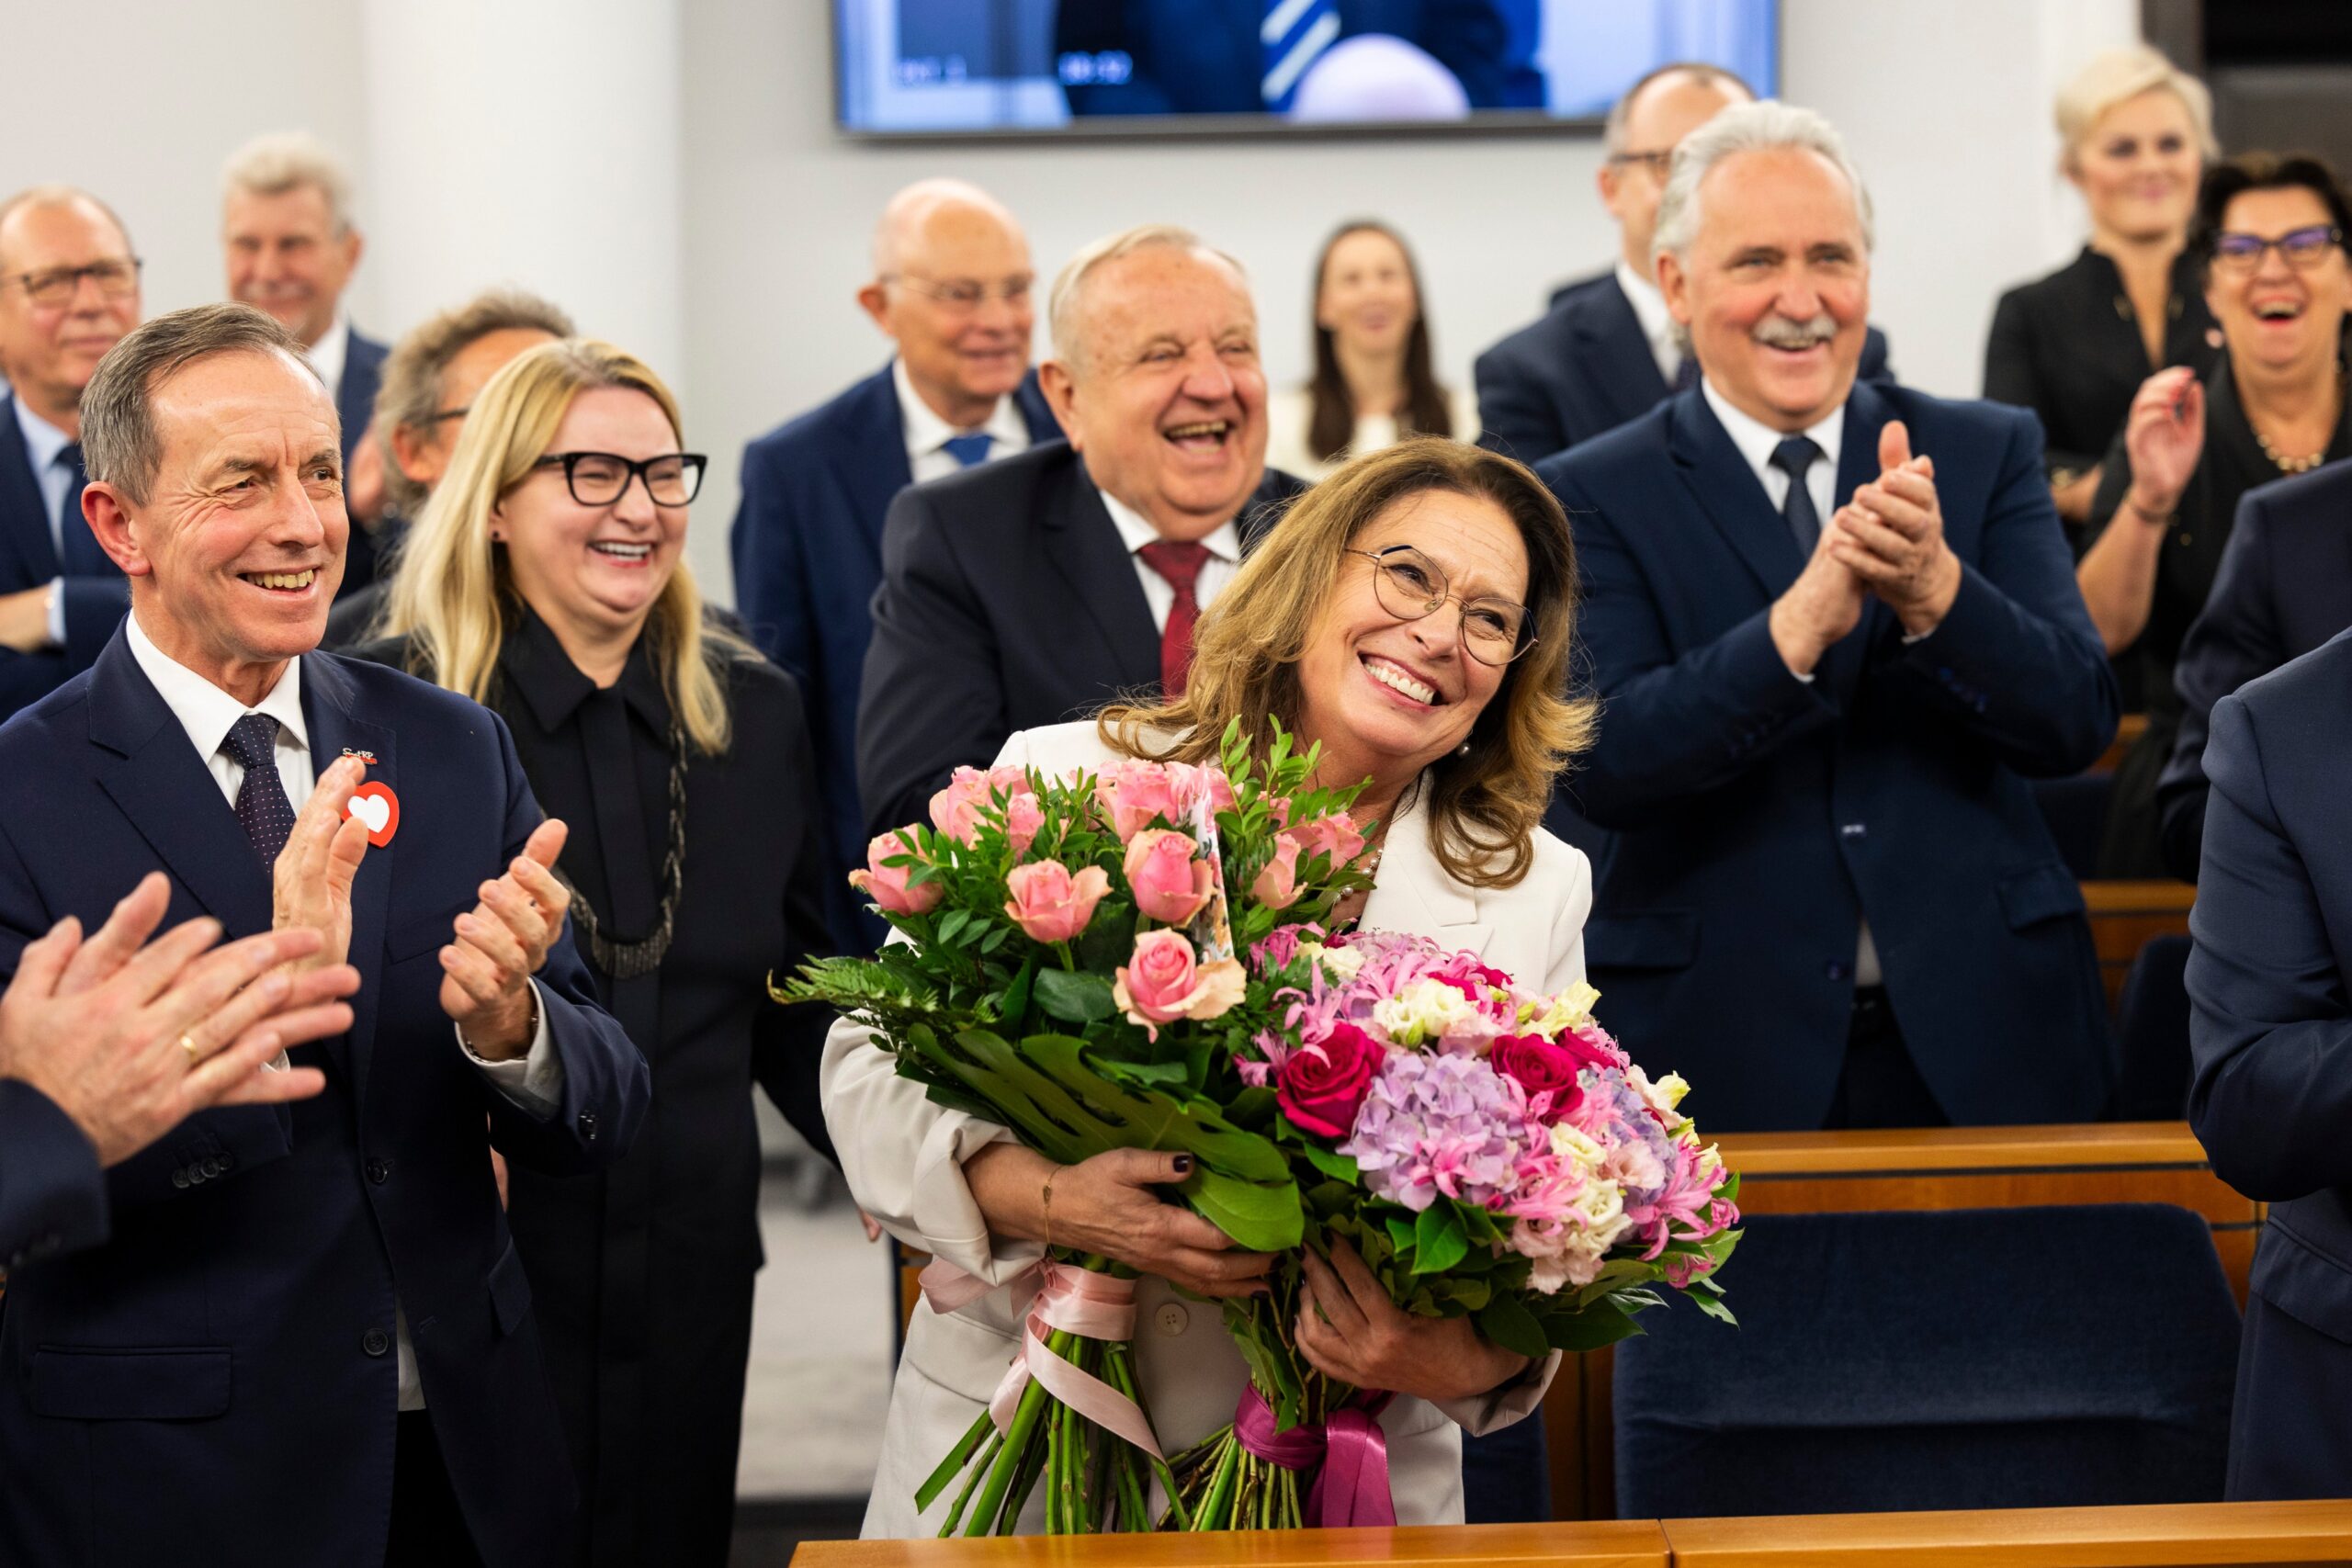 Спикеры Сейма и Сената избраны в Польше